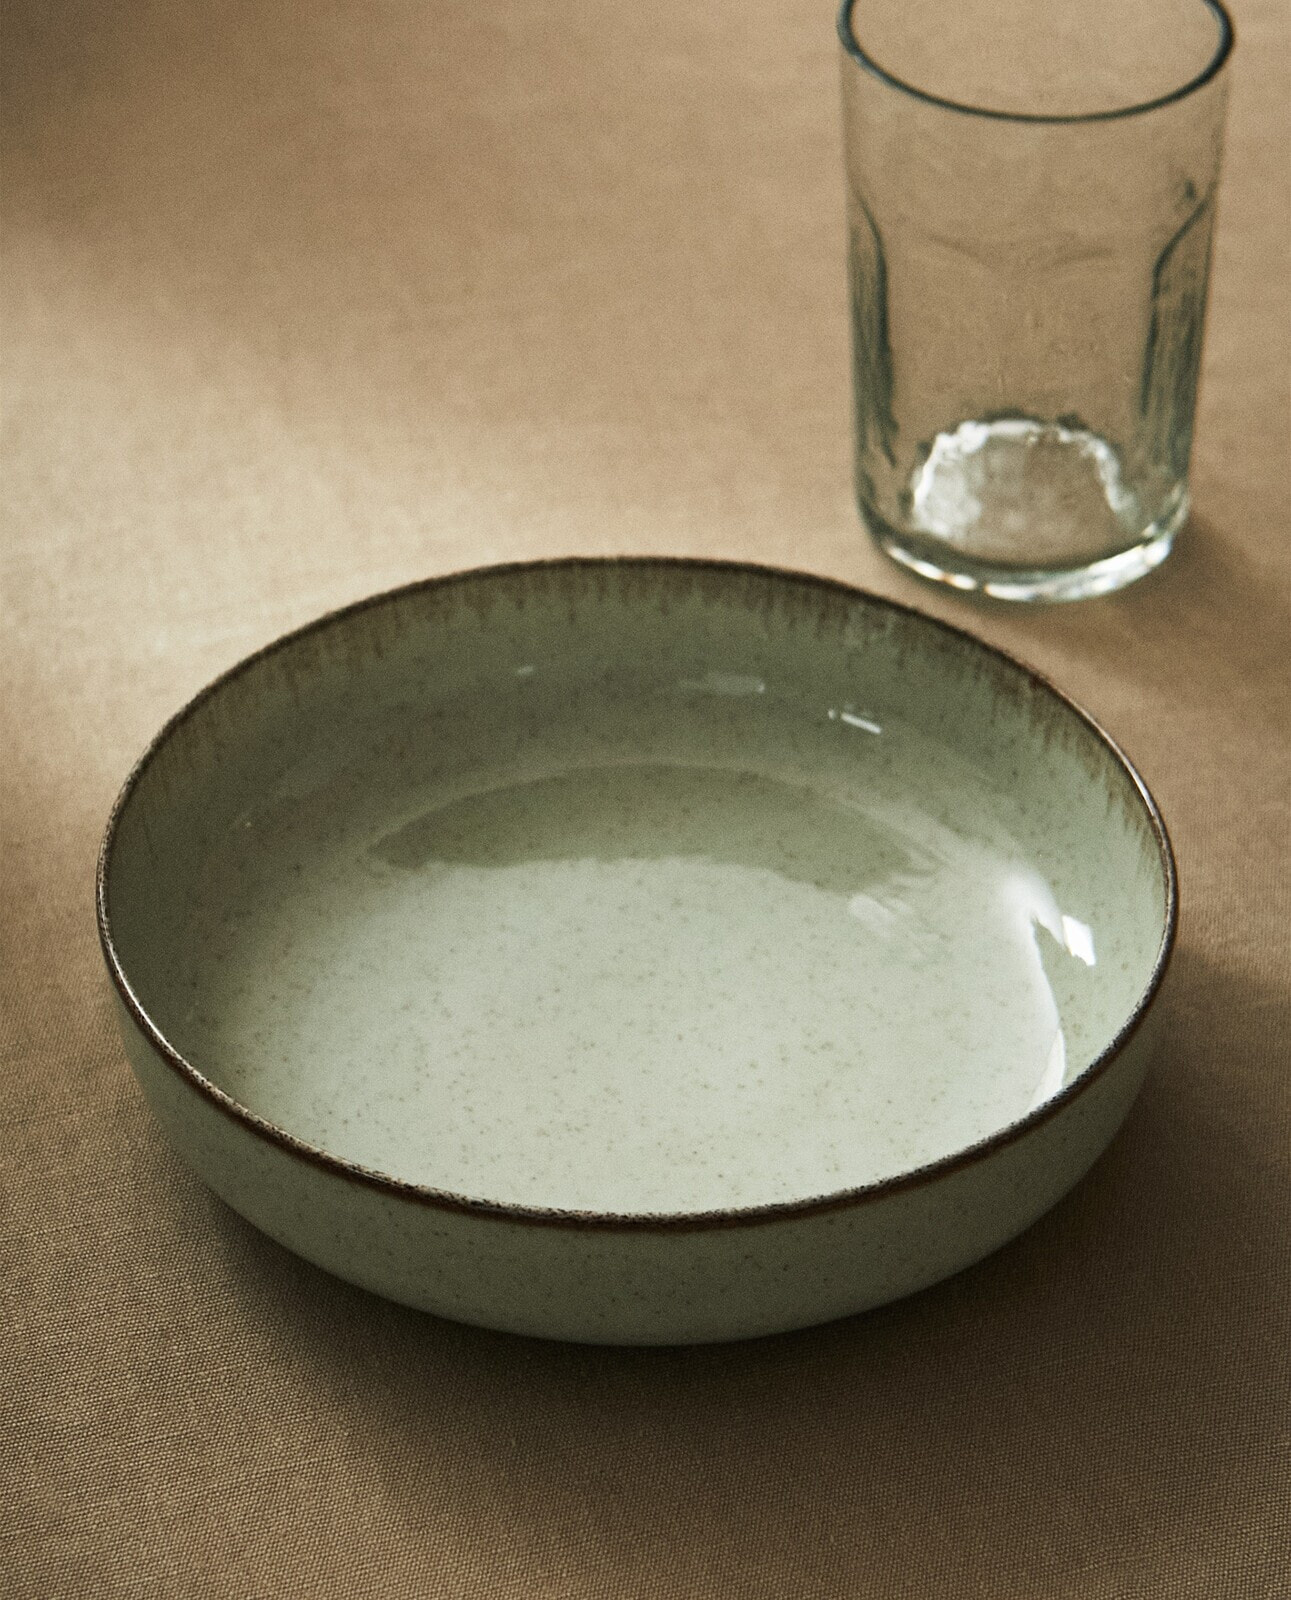 Porcelain soup plate with antique finish rim